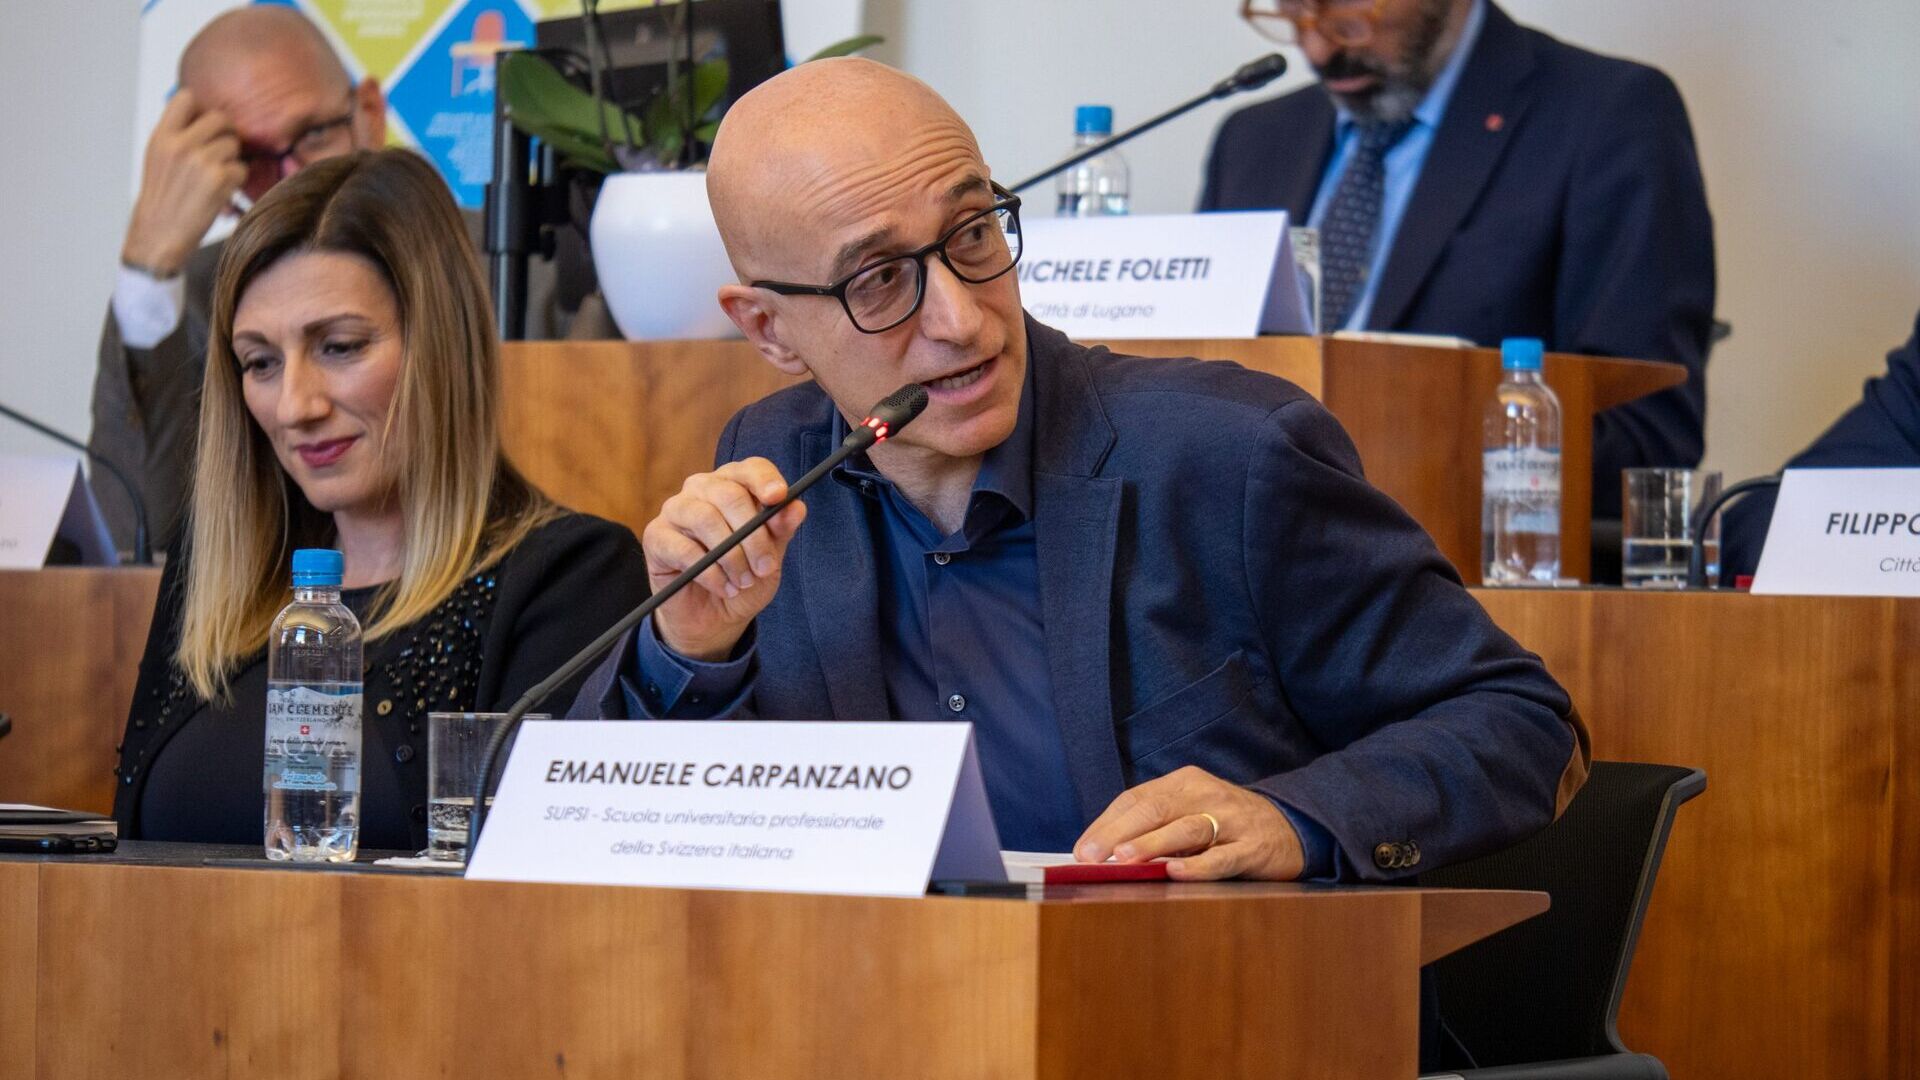 LTCC: Emanuele Carpanzano è Direttore Ricerca, Sviluppo e Trasferimento di Conoscenze della Scuola Universitaria Professionale della Svizzera Italiana